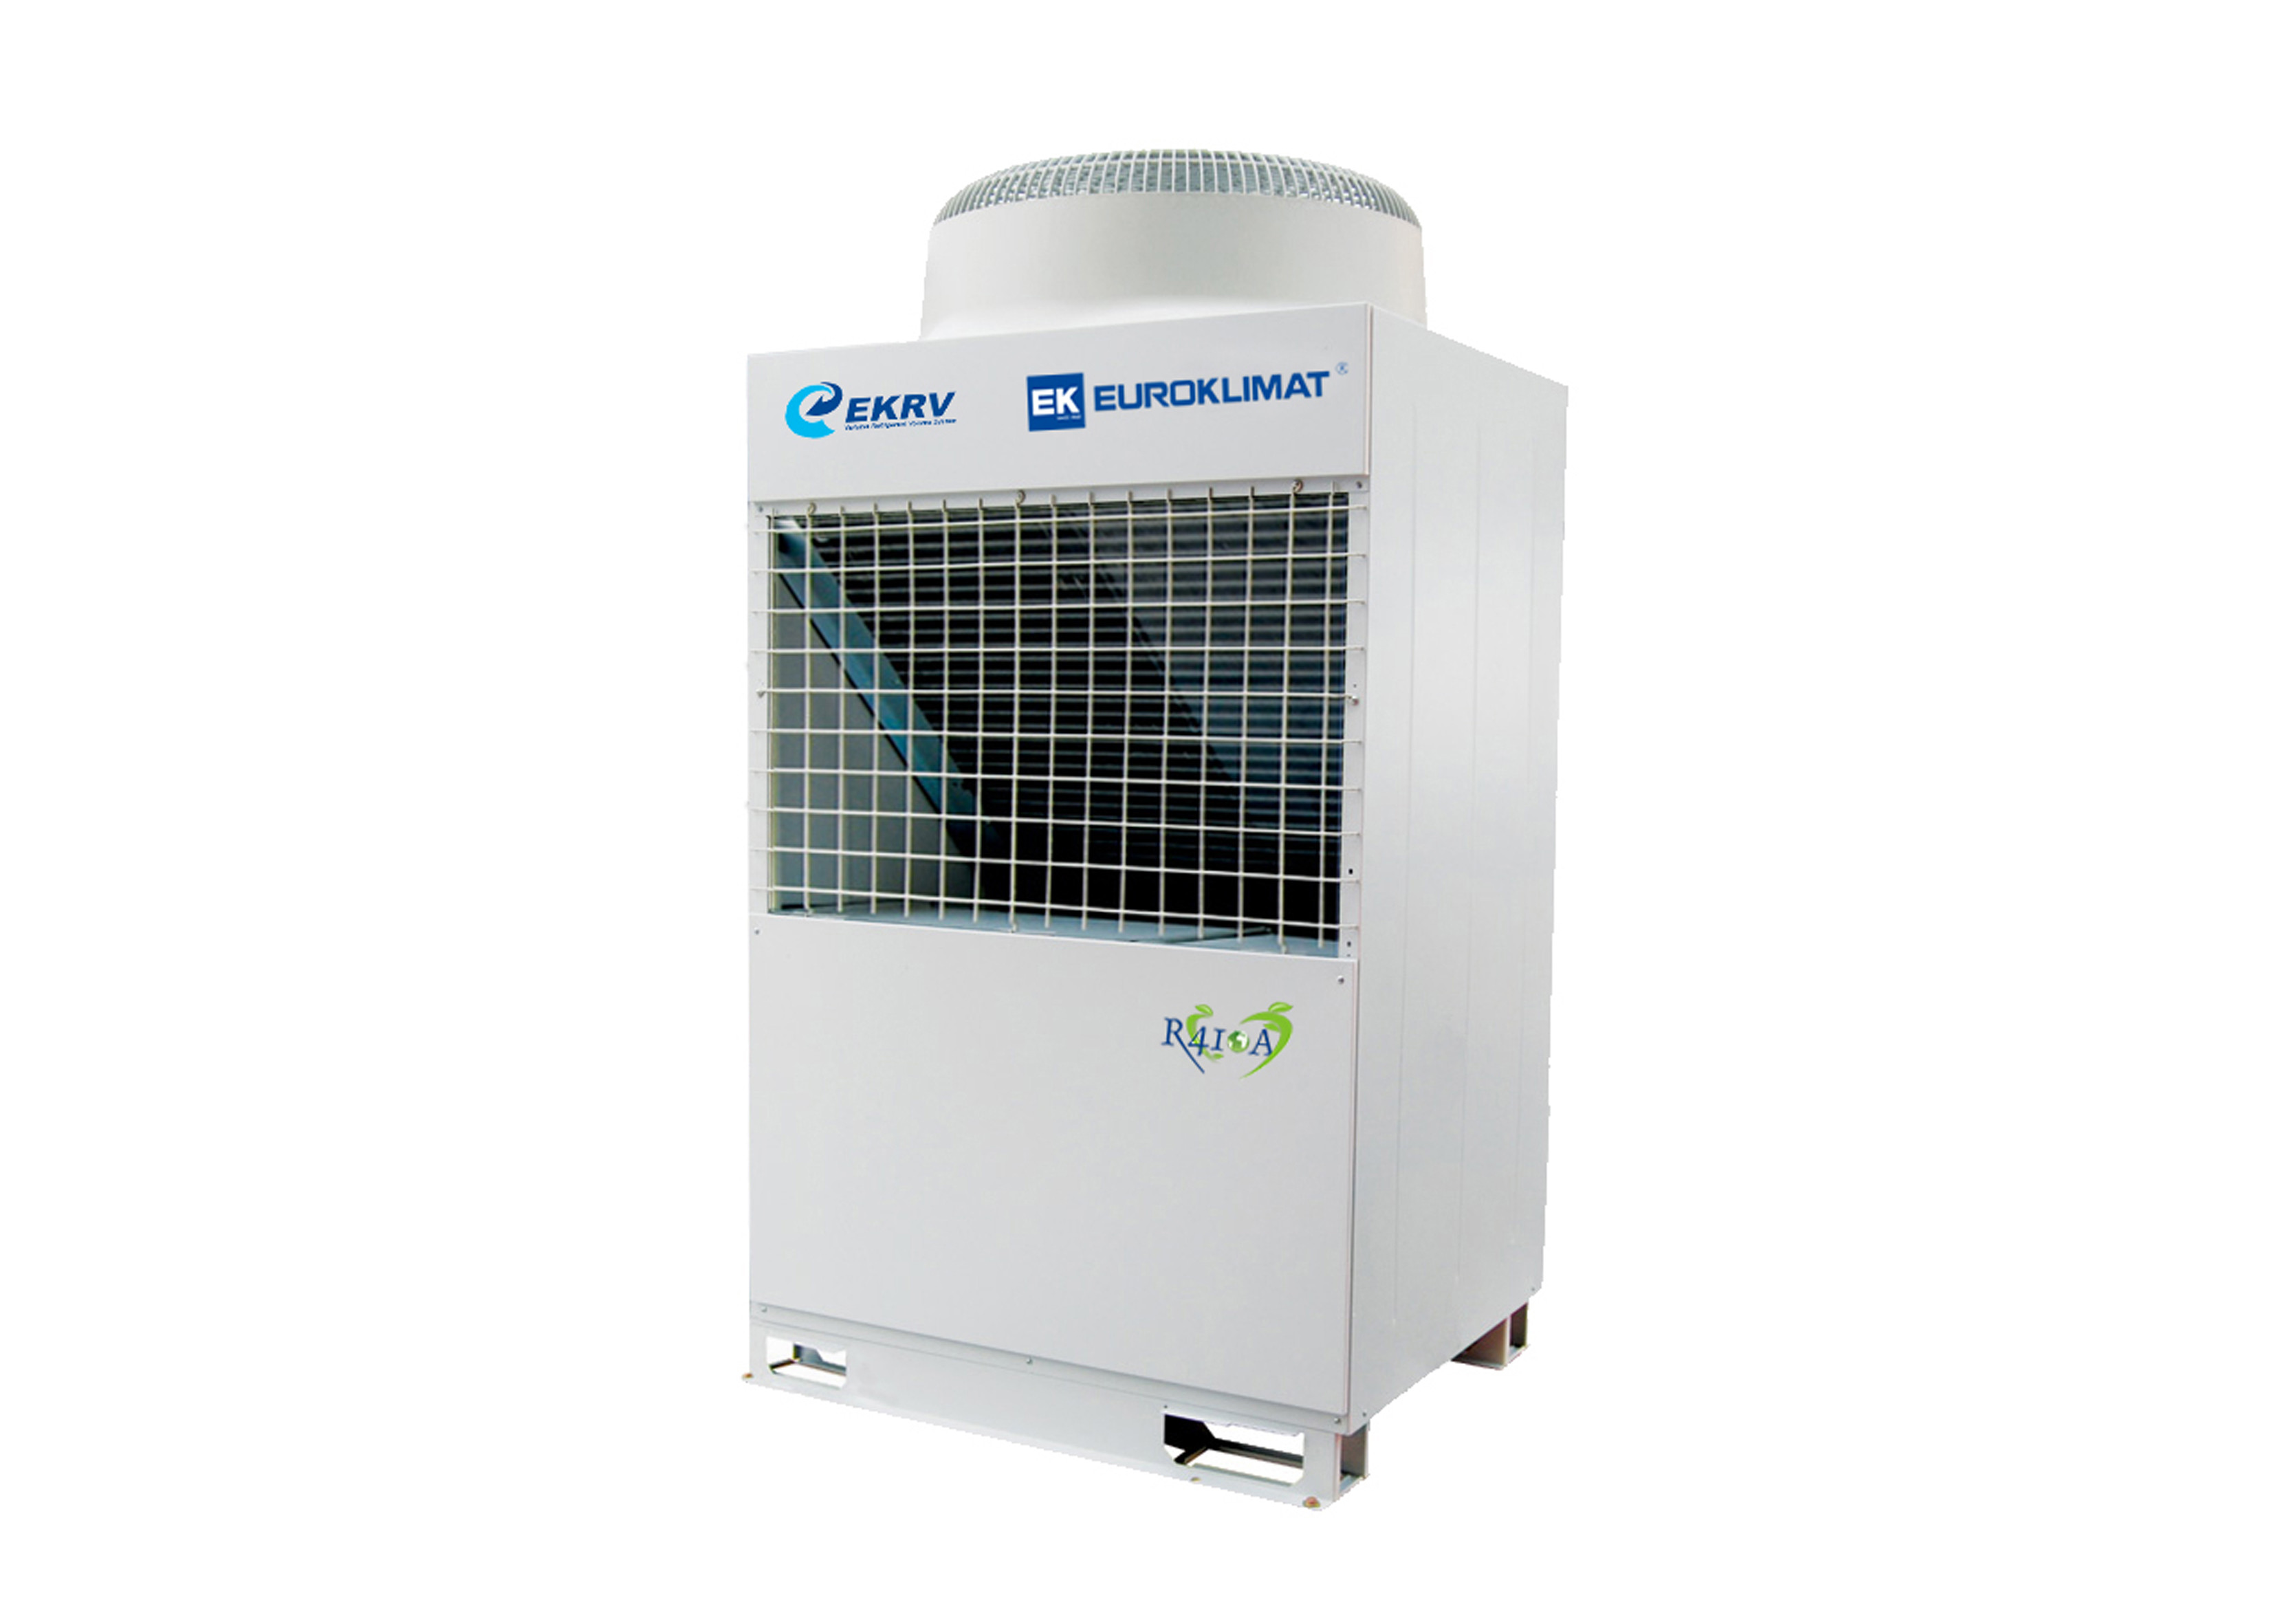 Zentrale VRF Klimaanlagen-niedriger Energieverbrauch R410A 10KW/15KW